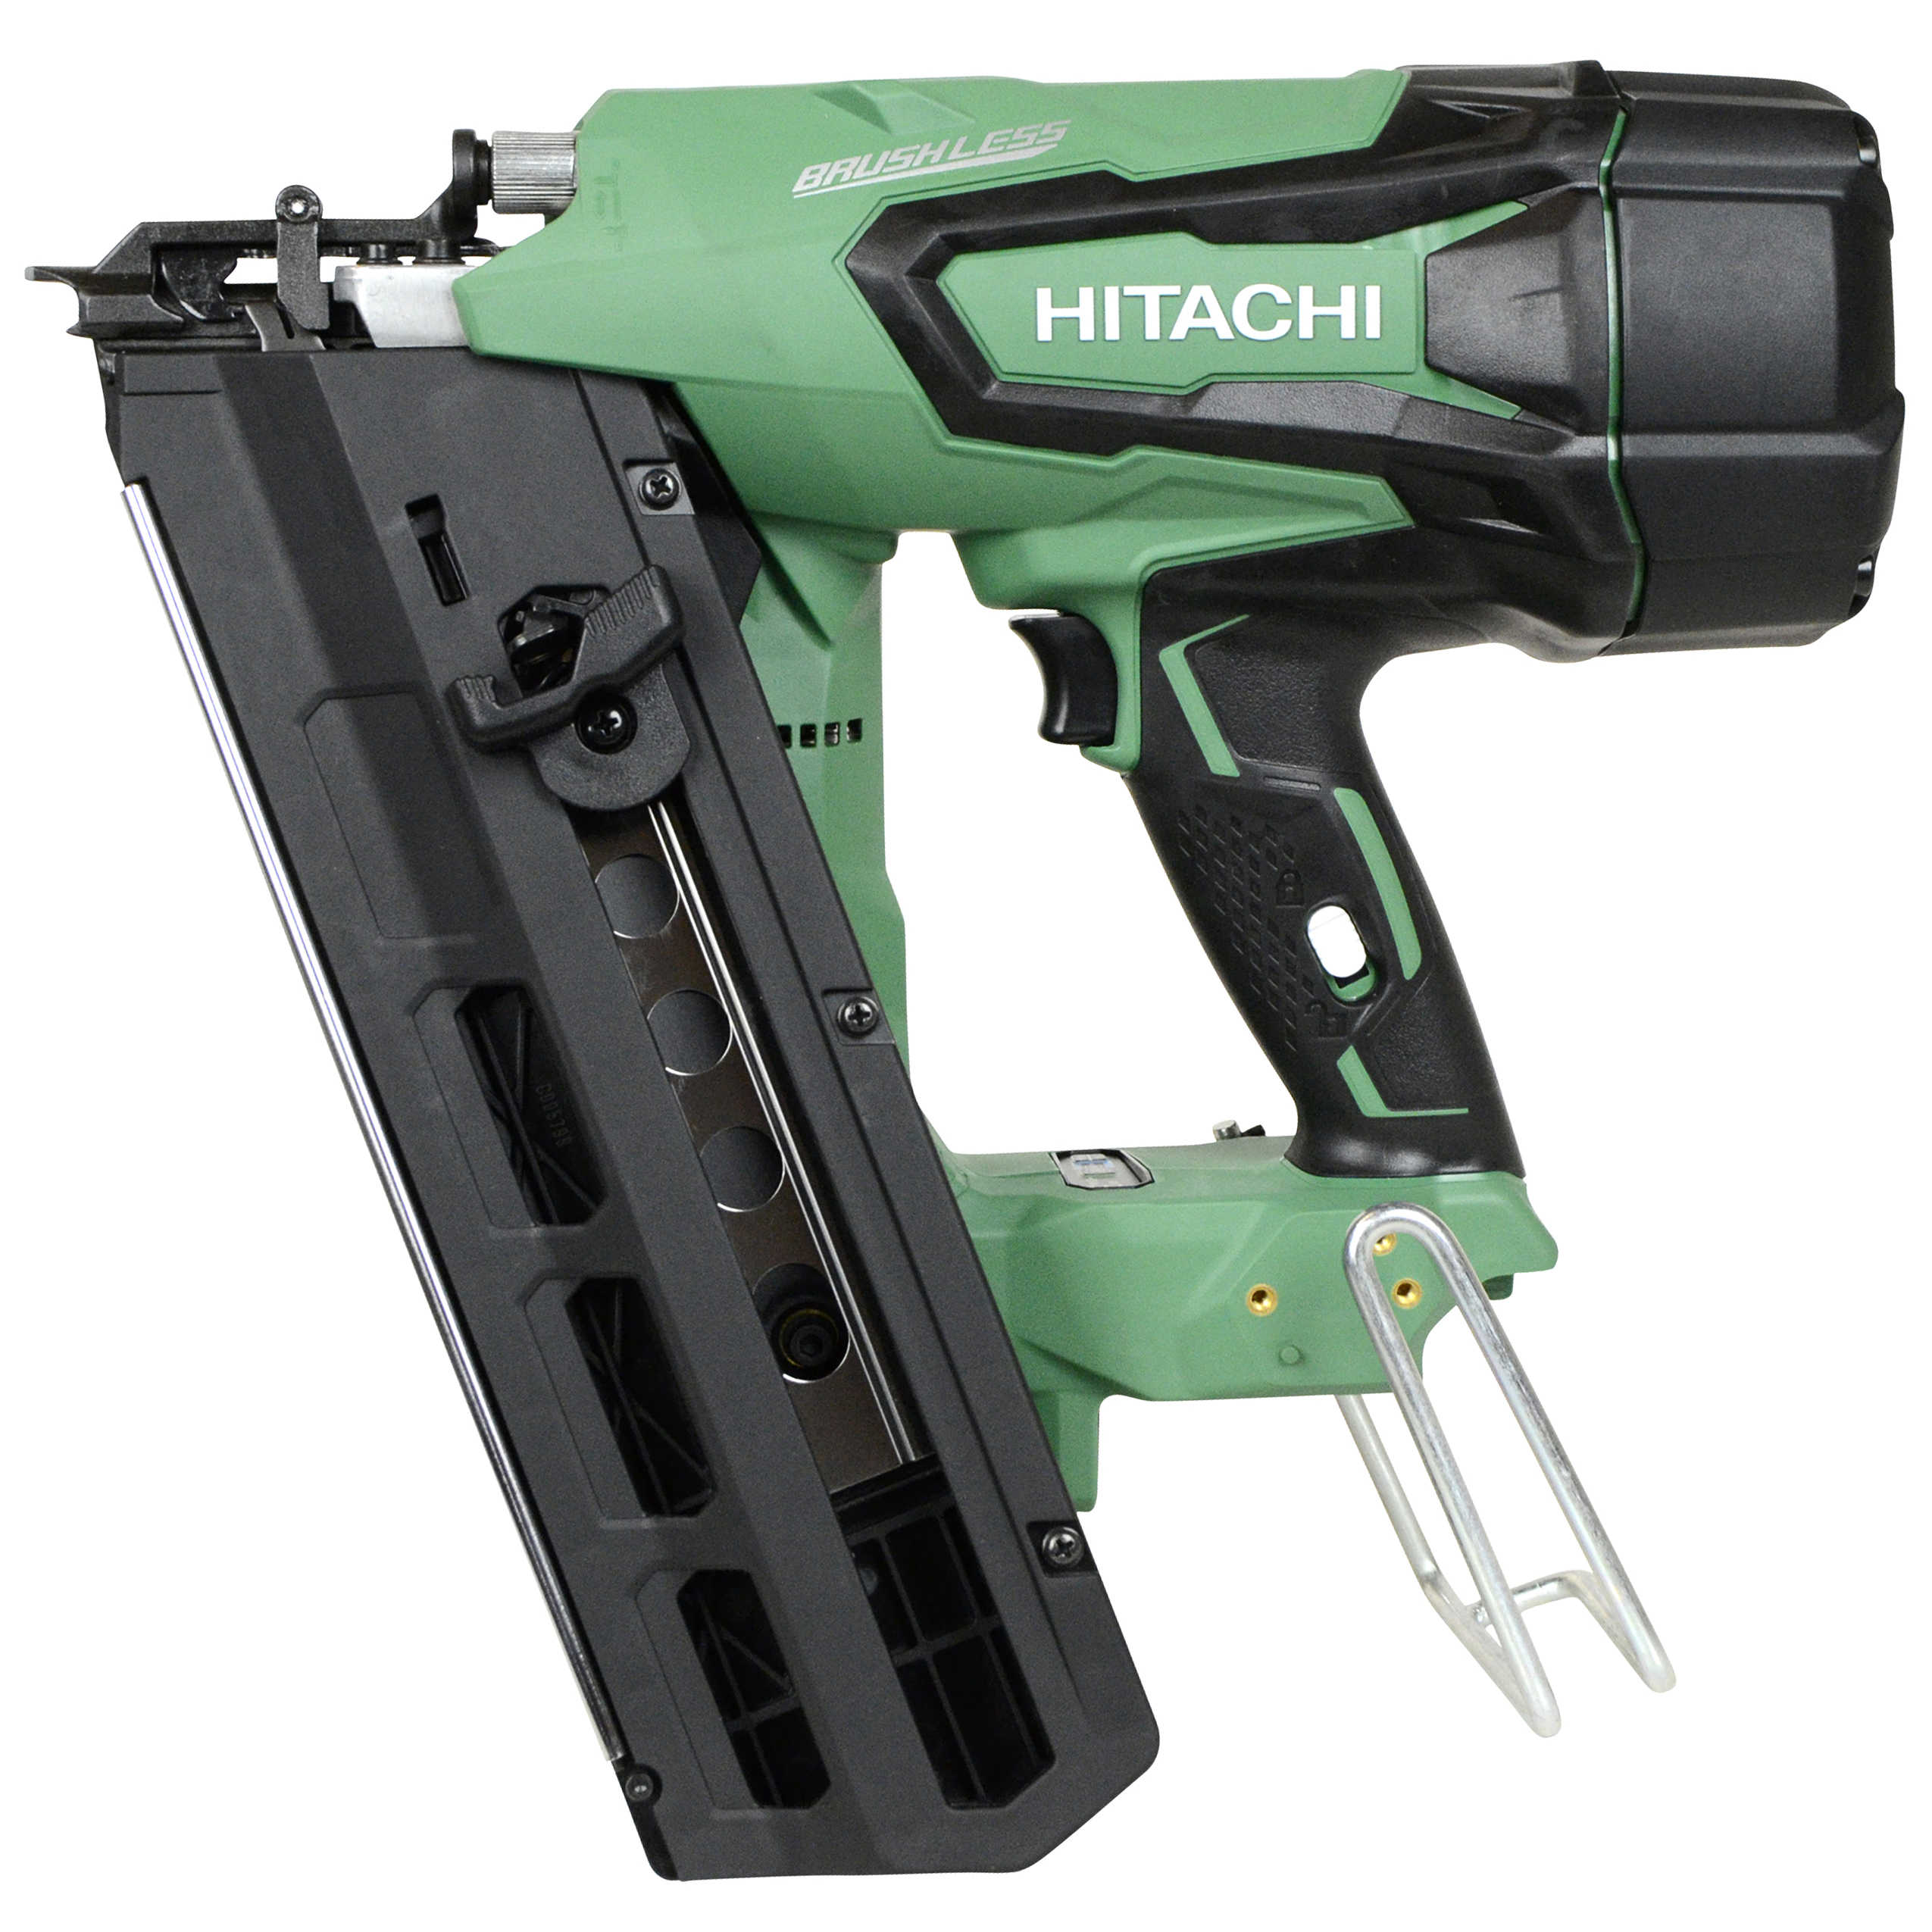 Hitachi NR1890DR 18V Brushless 2'-3.5' 21-Degree Plastic Strip Framing Nailer, Tool Only